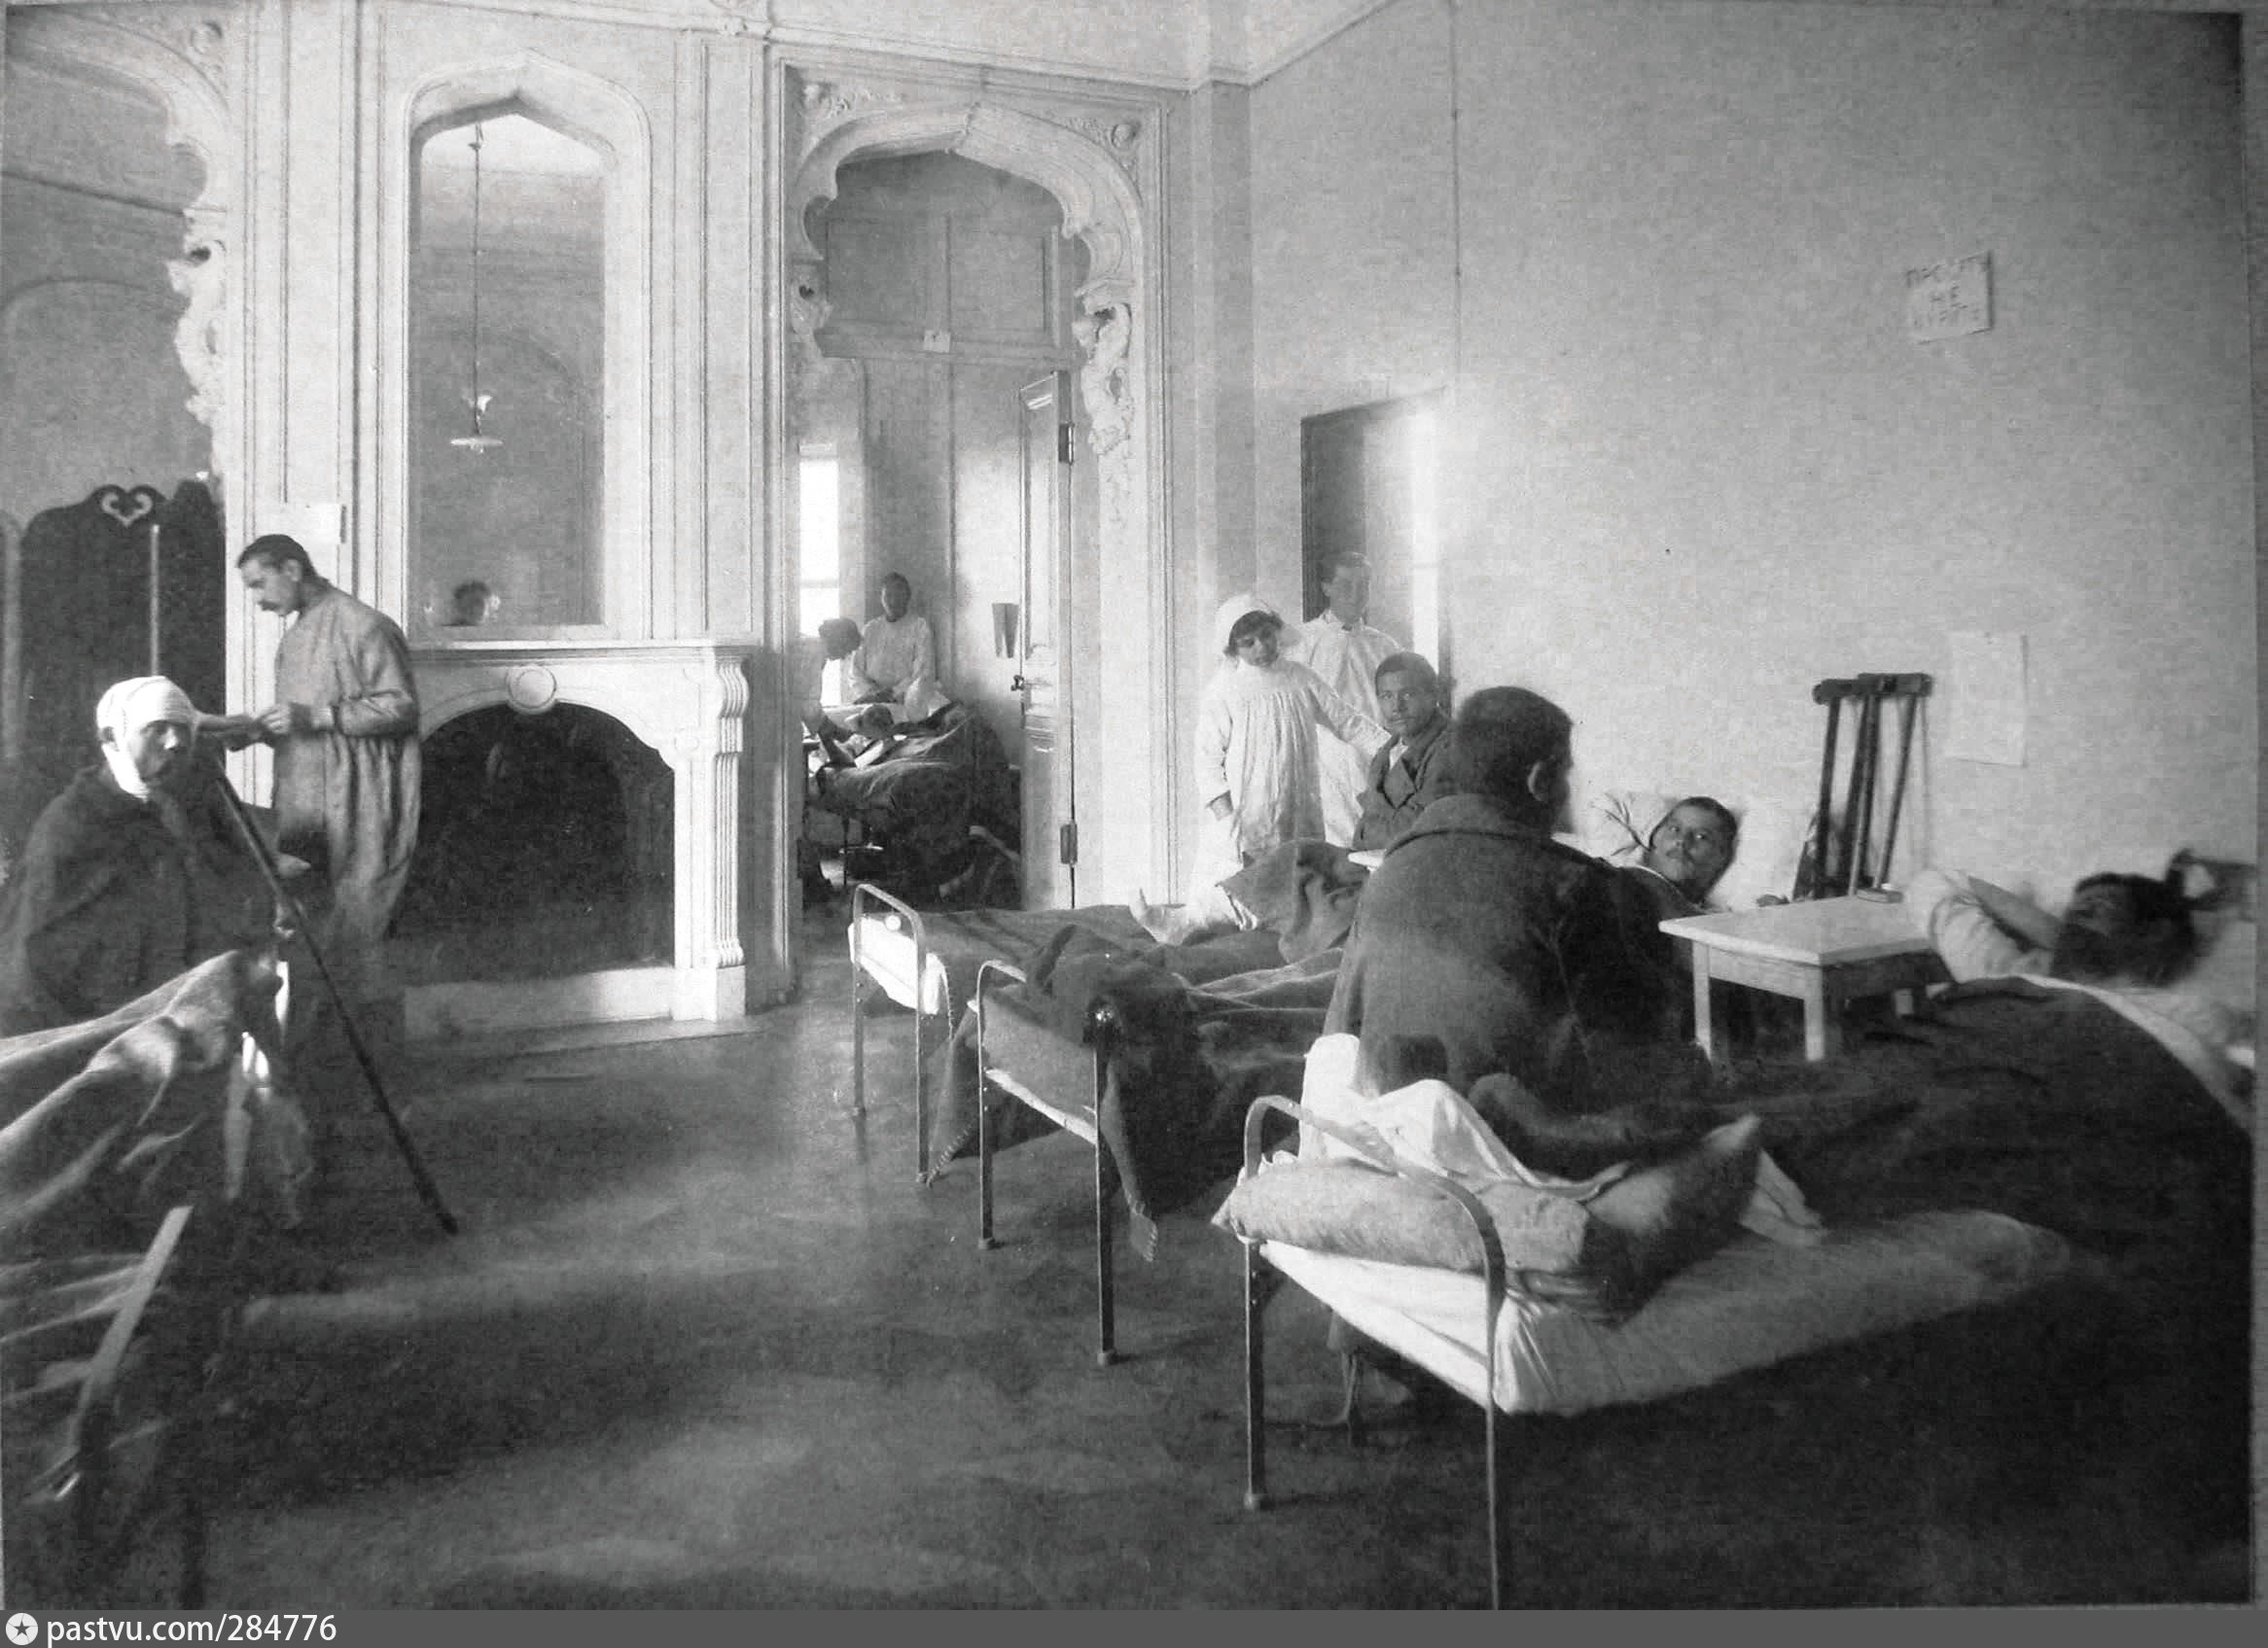 Офицер в госпитале. Госпиталь для раненных в Измайлово 1914 год. Ночлежный дом в царской России.